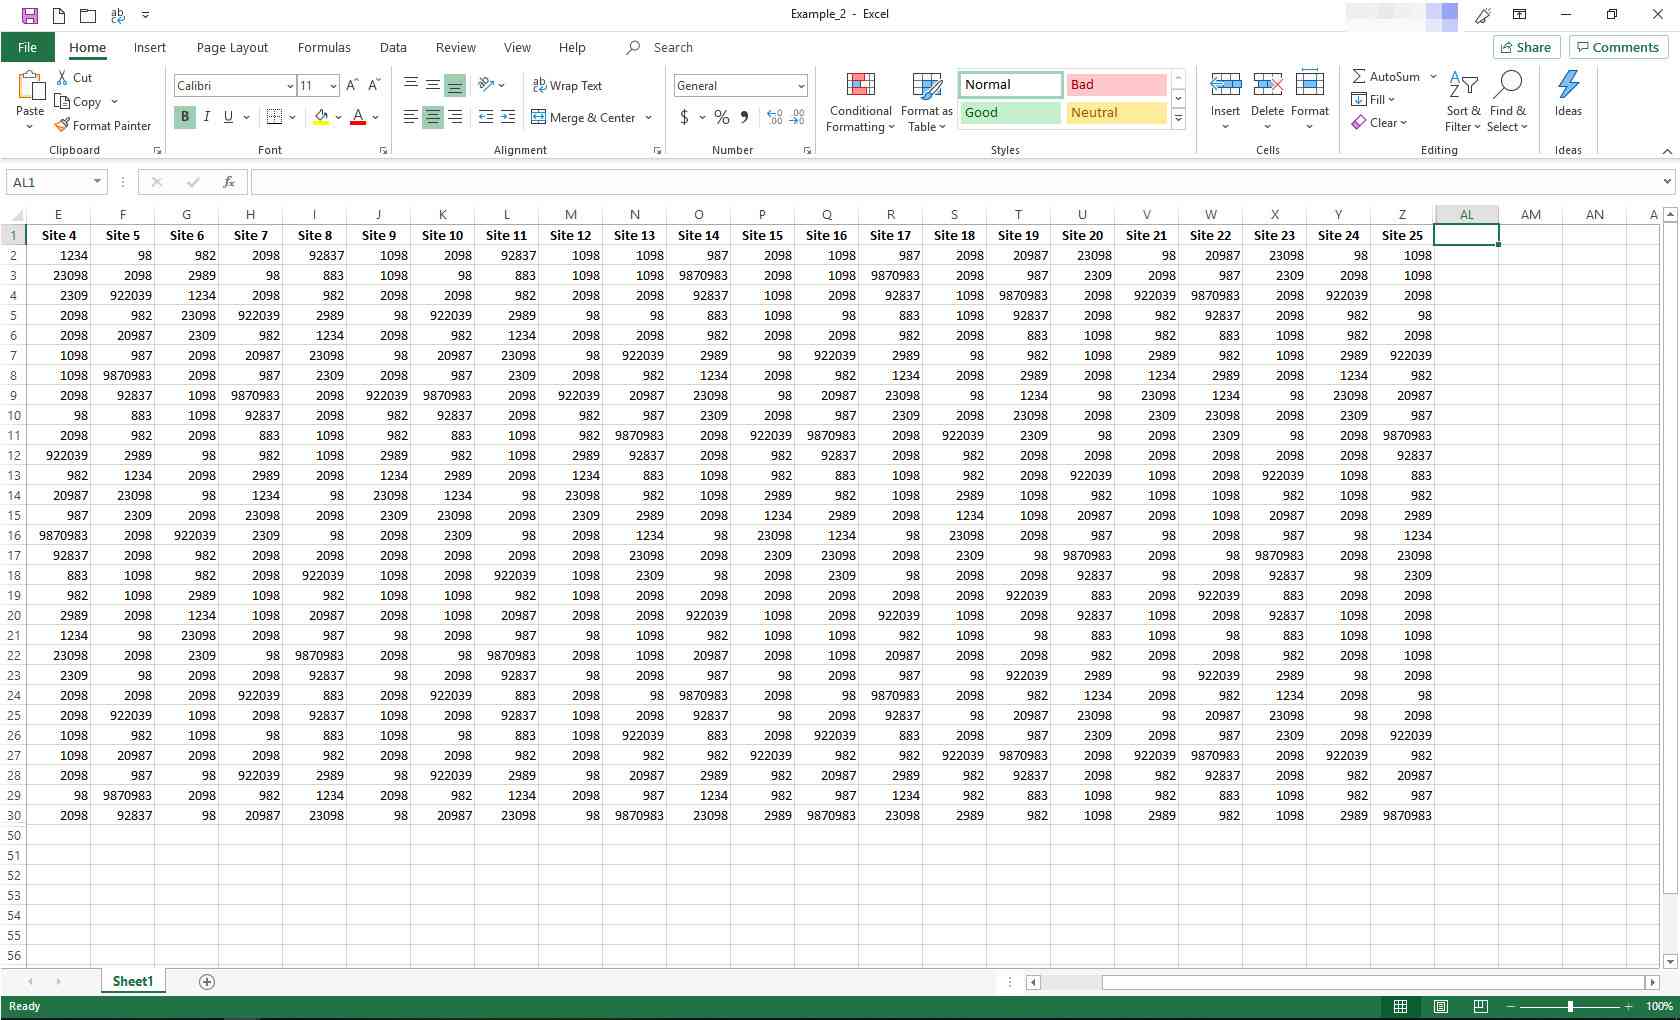 Excel-kalkylblad med några dolda kolumner